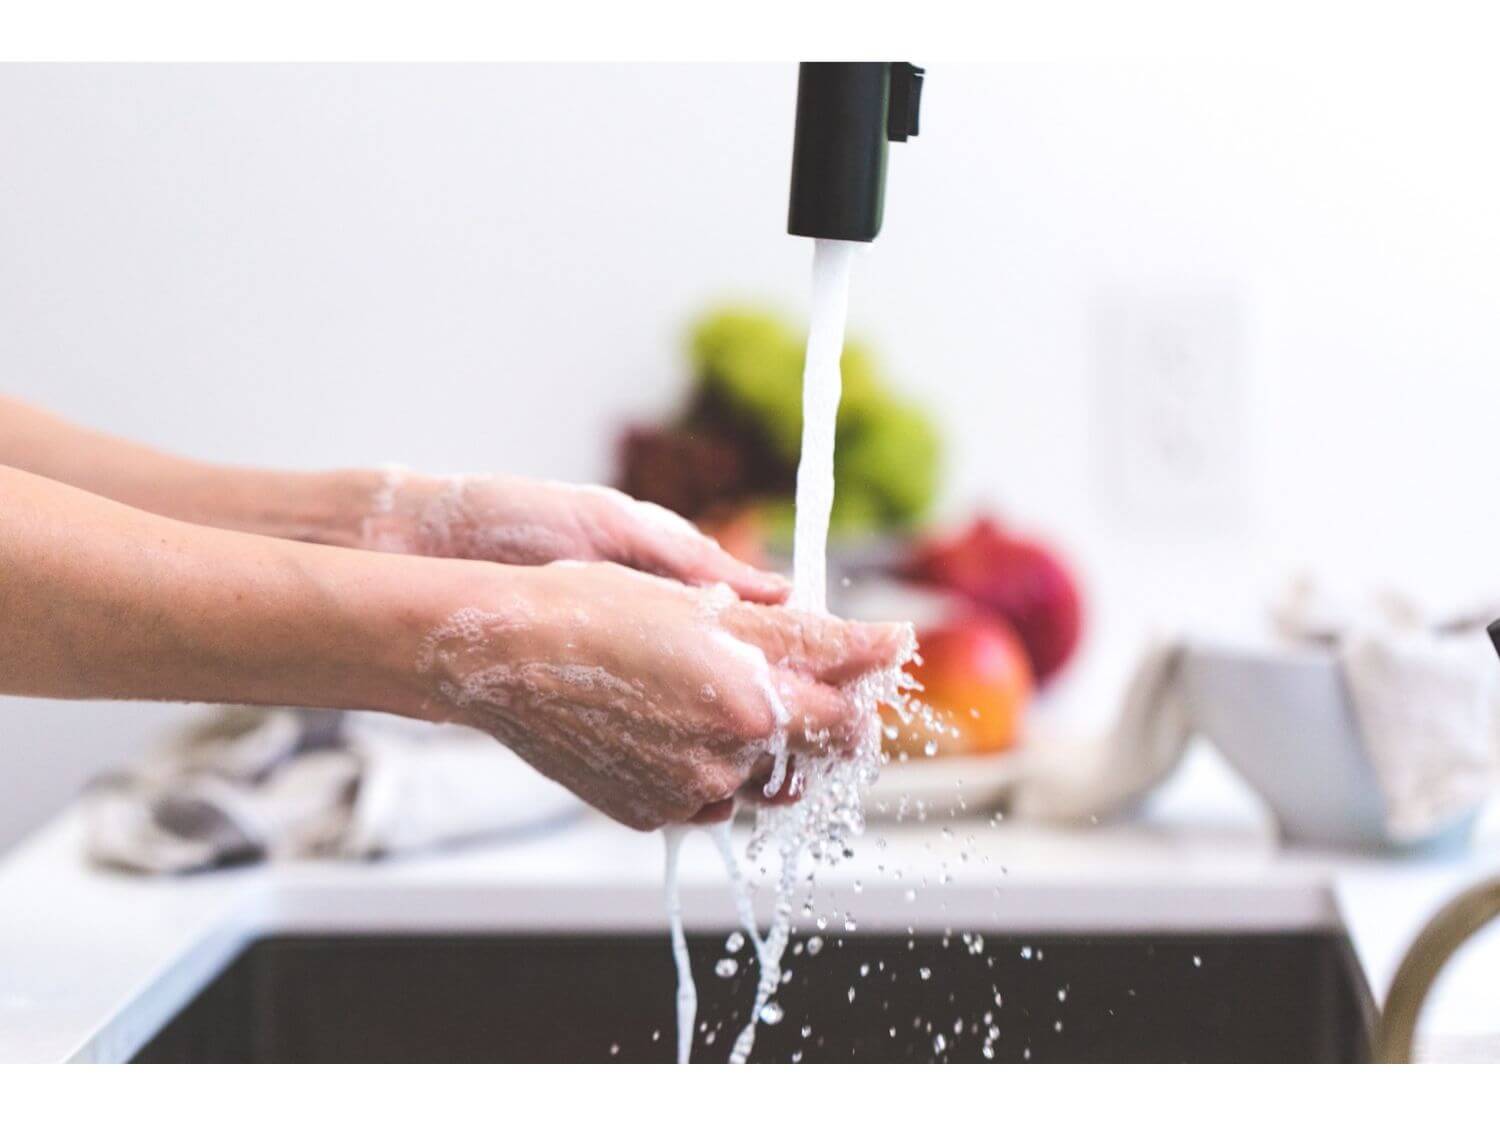 cooking-hands-handwashing-health-545013 (1) (1)